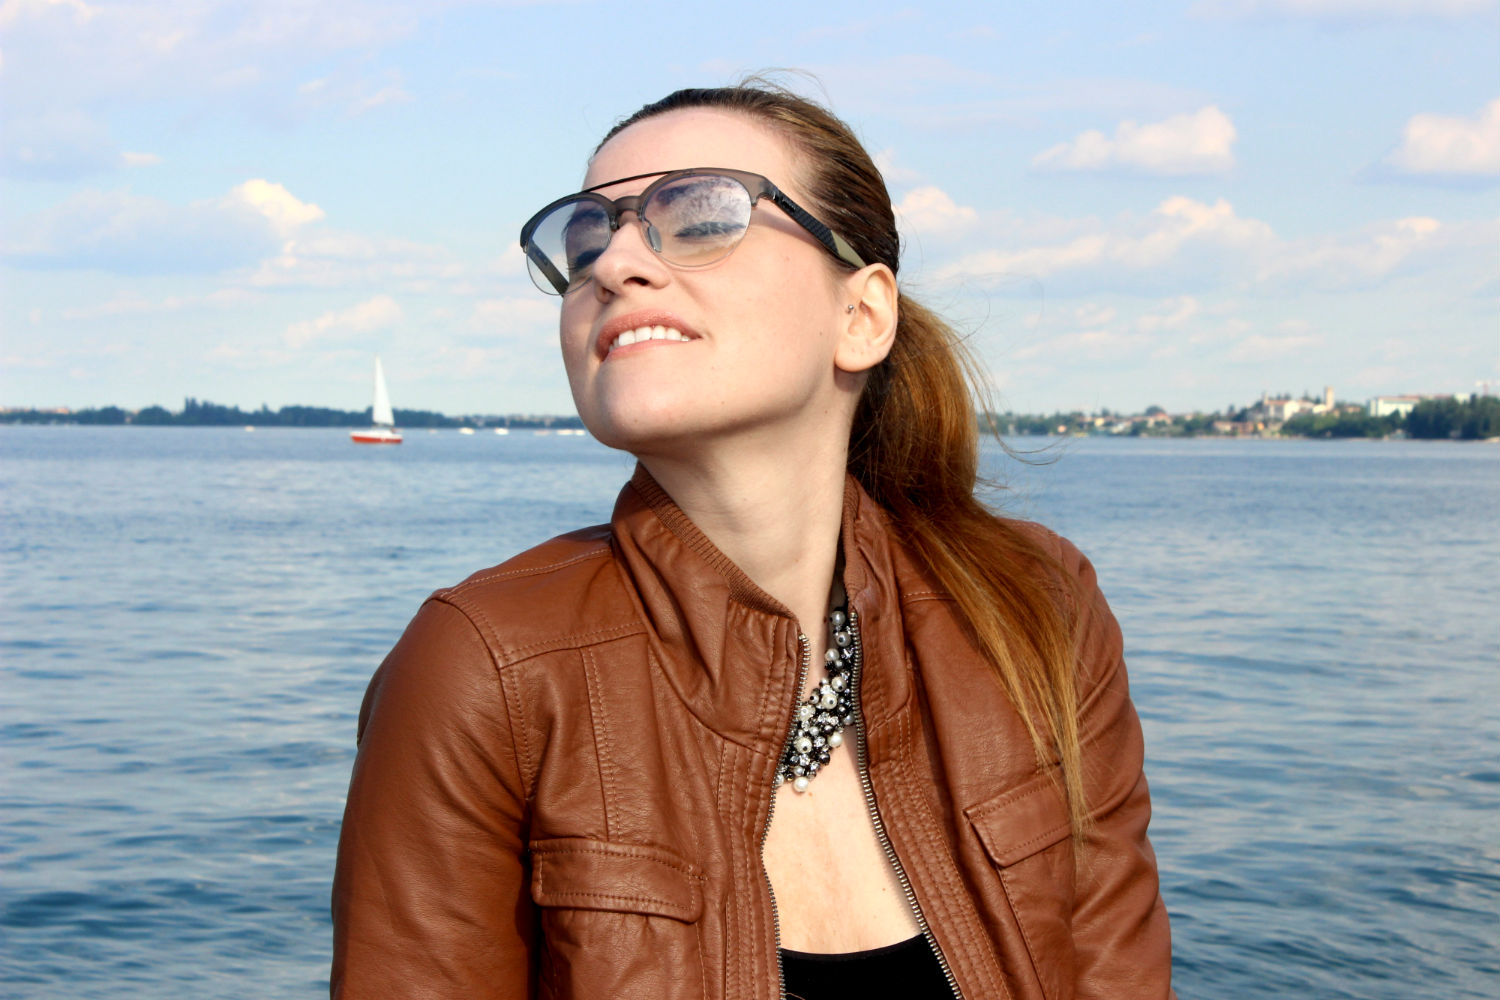 luca barra gioielli e occhiali da sole gucci elisabetta bertolini fashion blogger